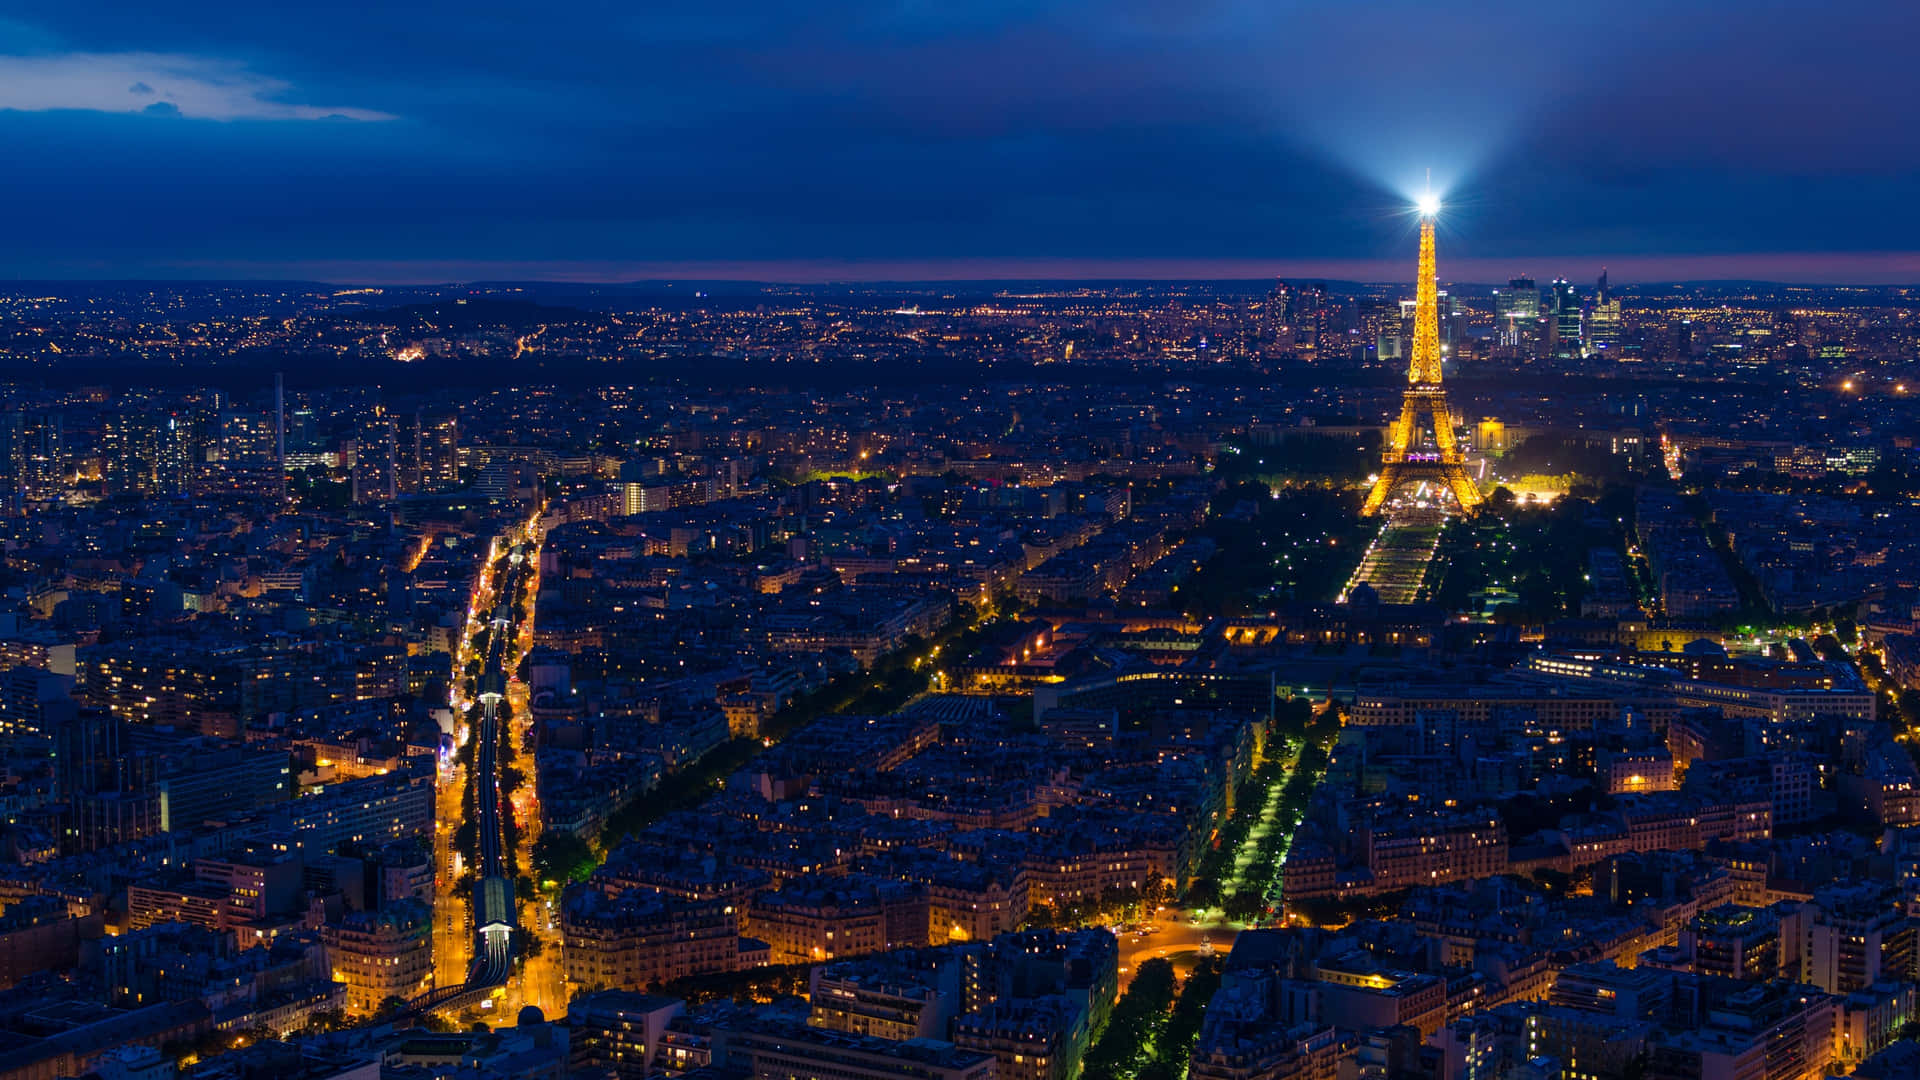 Et romantisk udsyn af Paris om natten Wallpaper